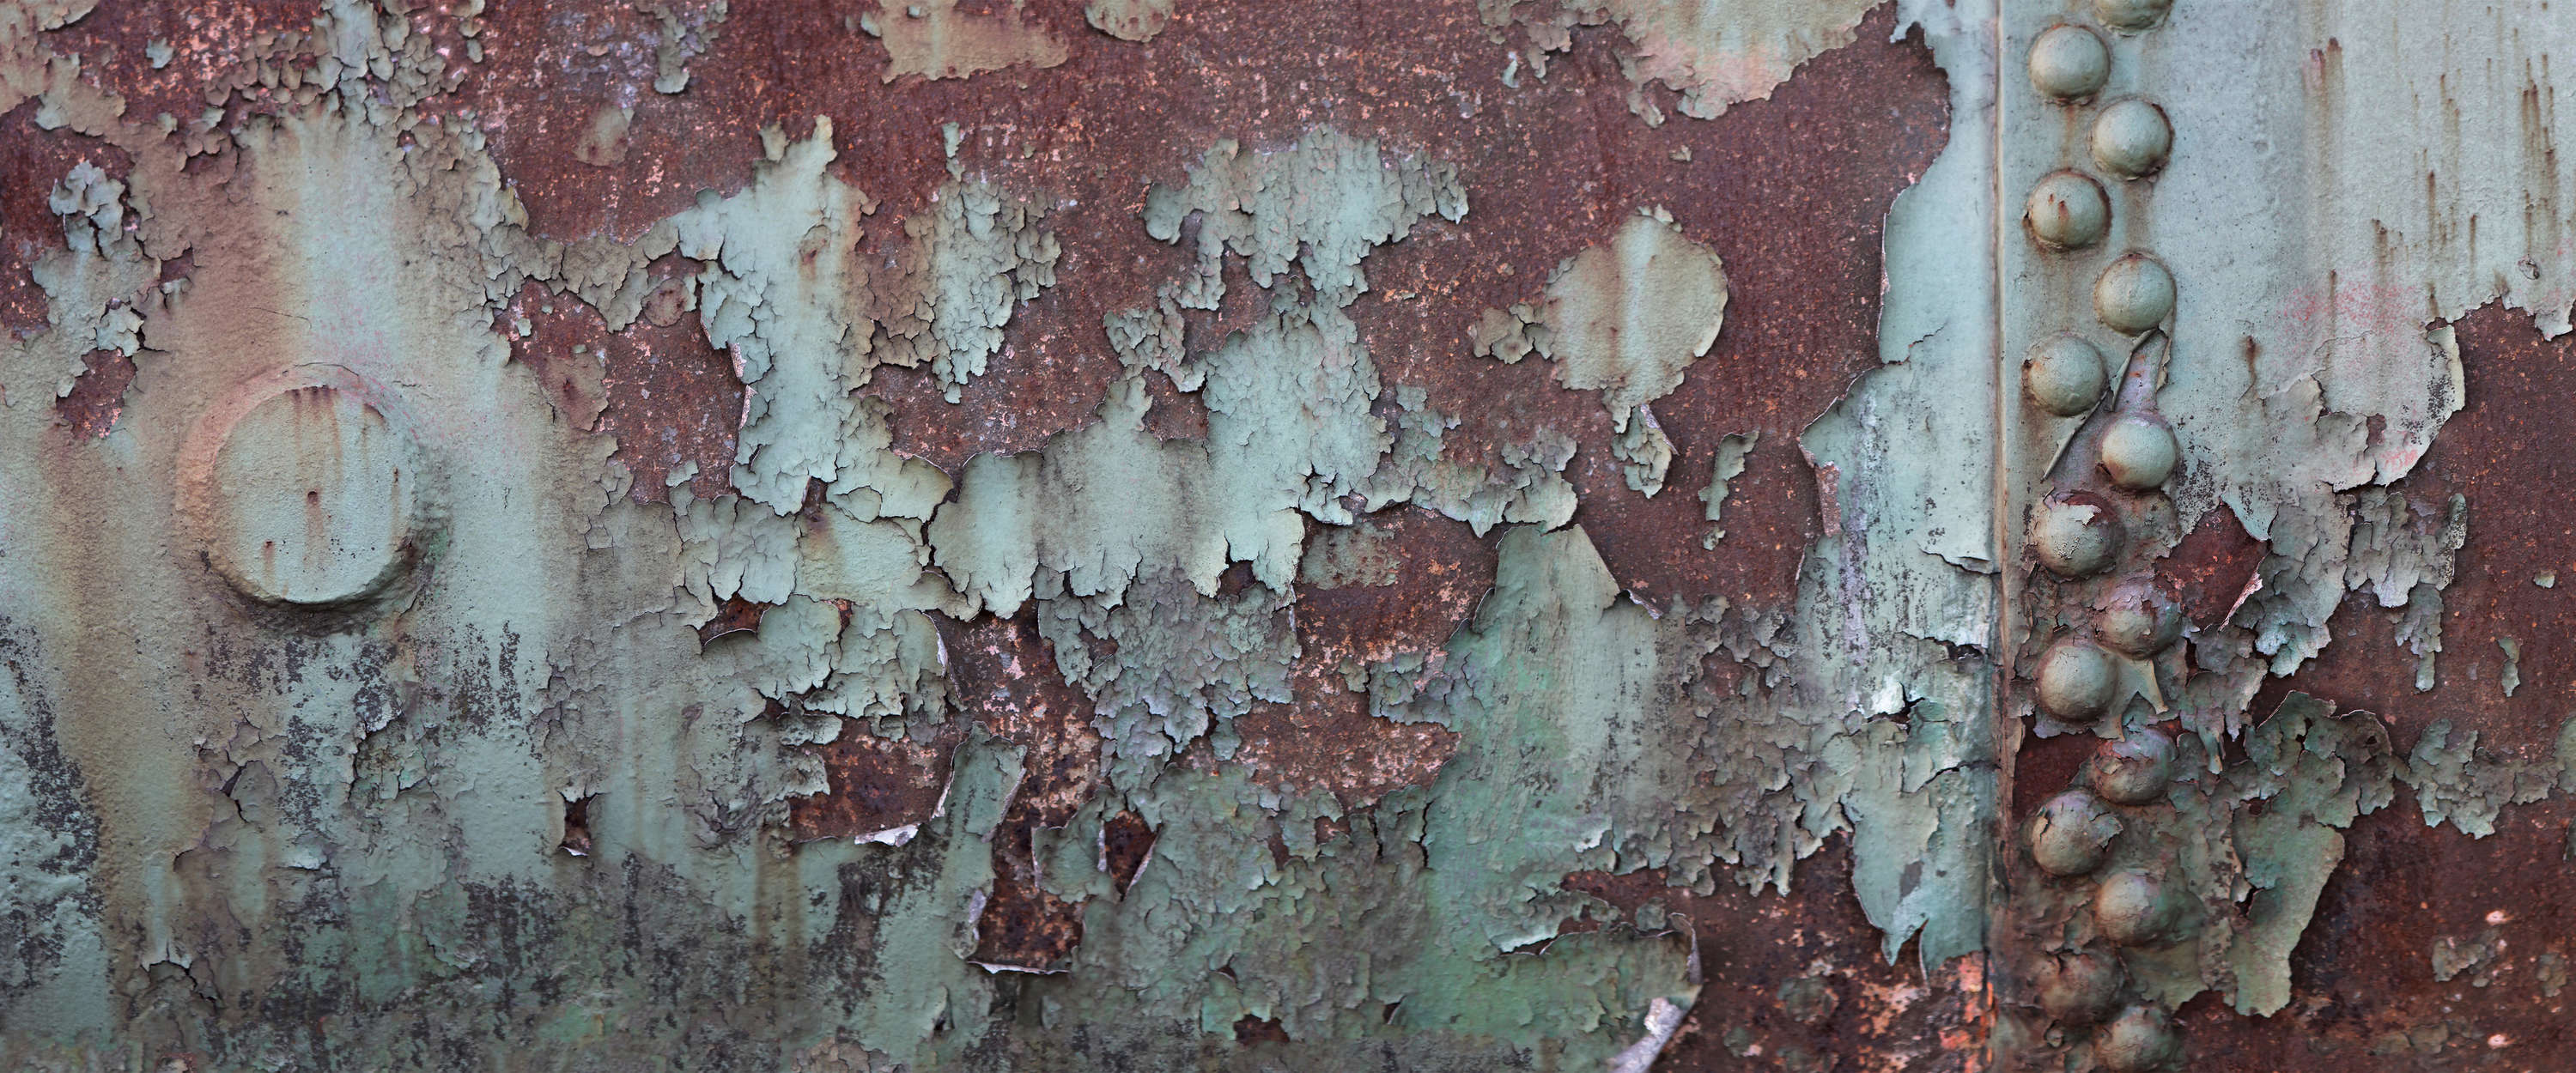             Muurschildering corroderende scheepsmuur - metalen plaat met roest
        